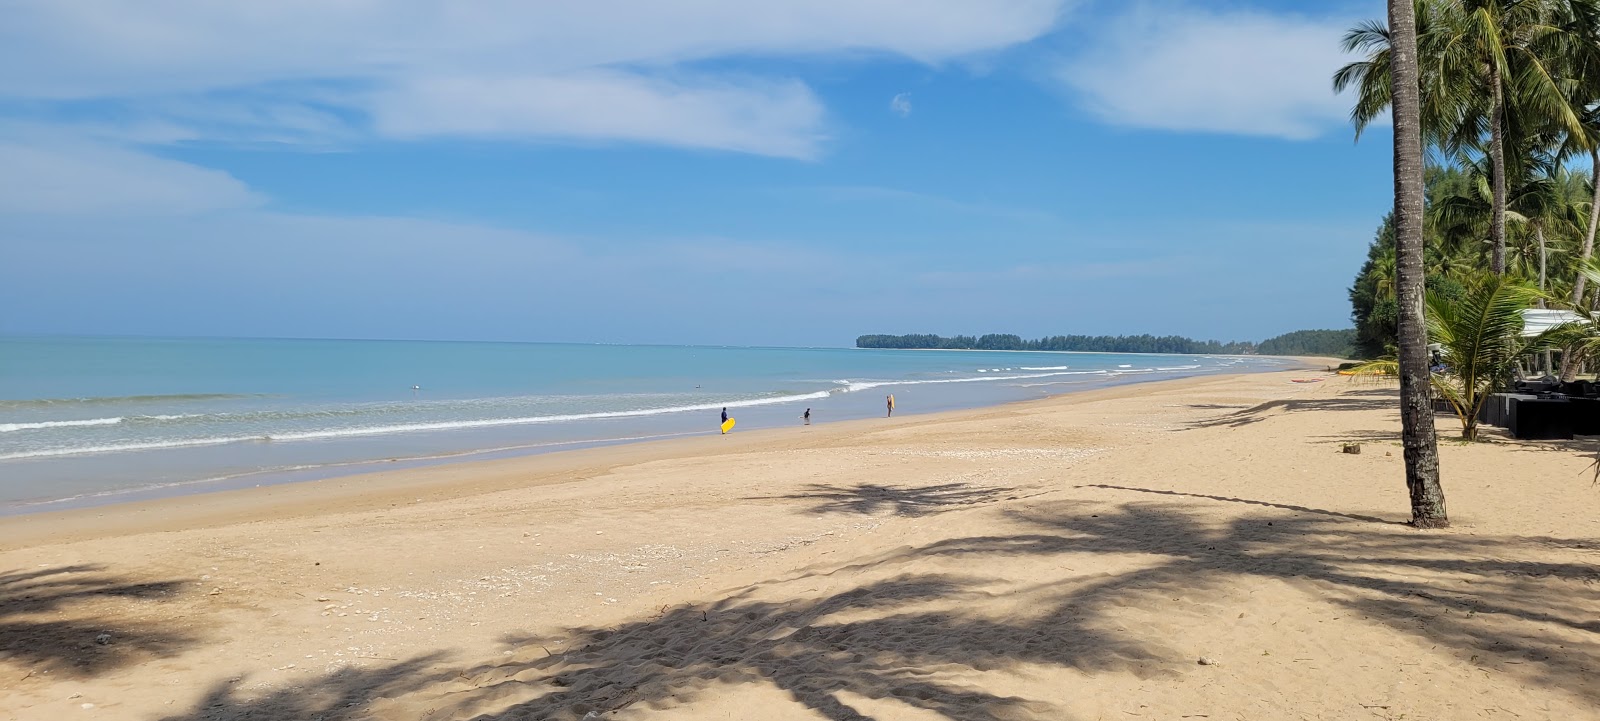 Zdjęcie Khuk Khak Beach - popularne miejsce wśród znawców relaksu